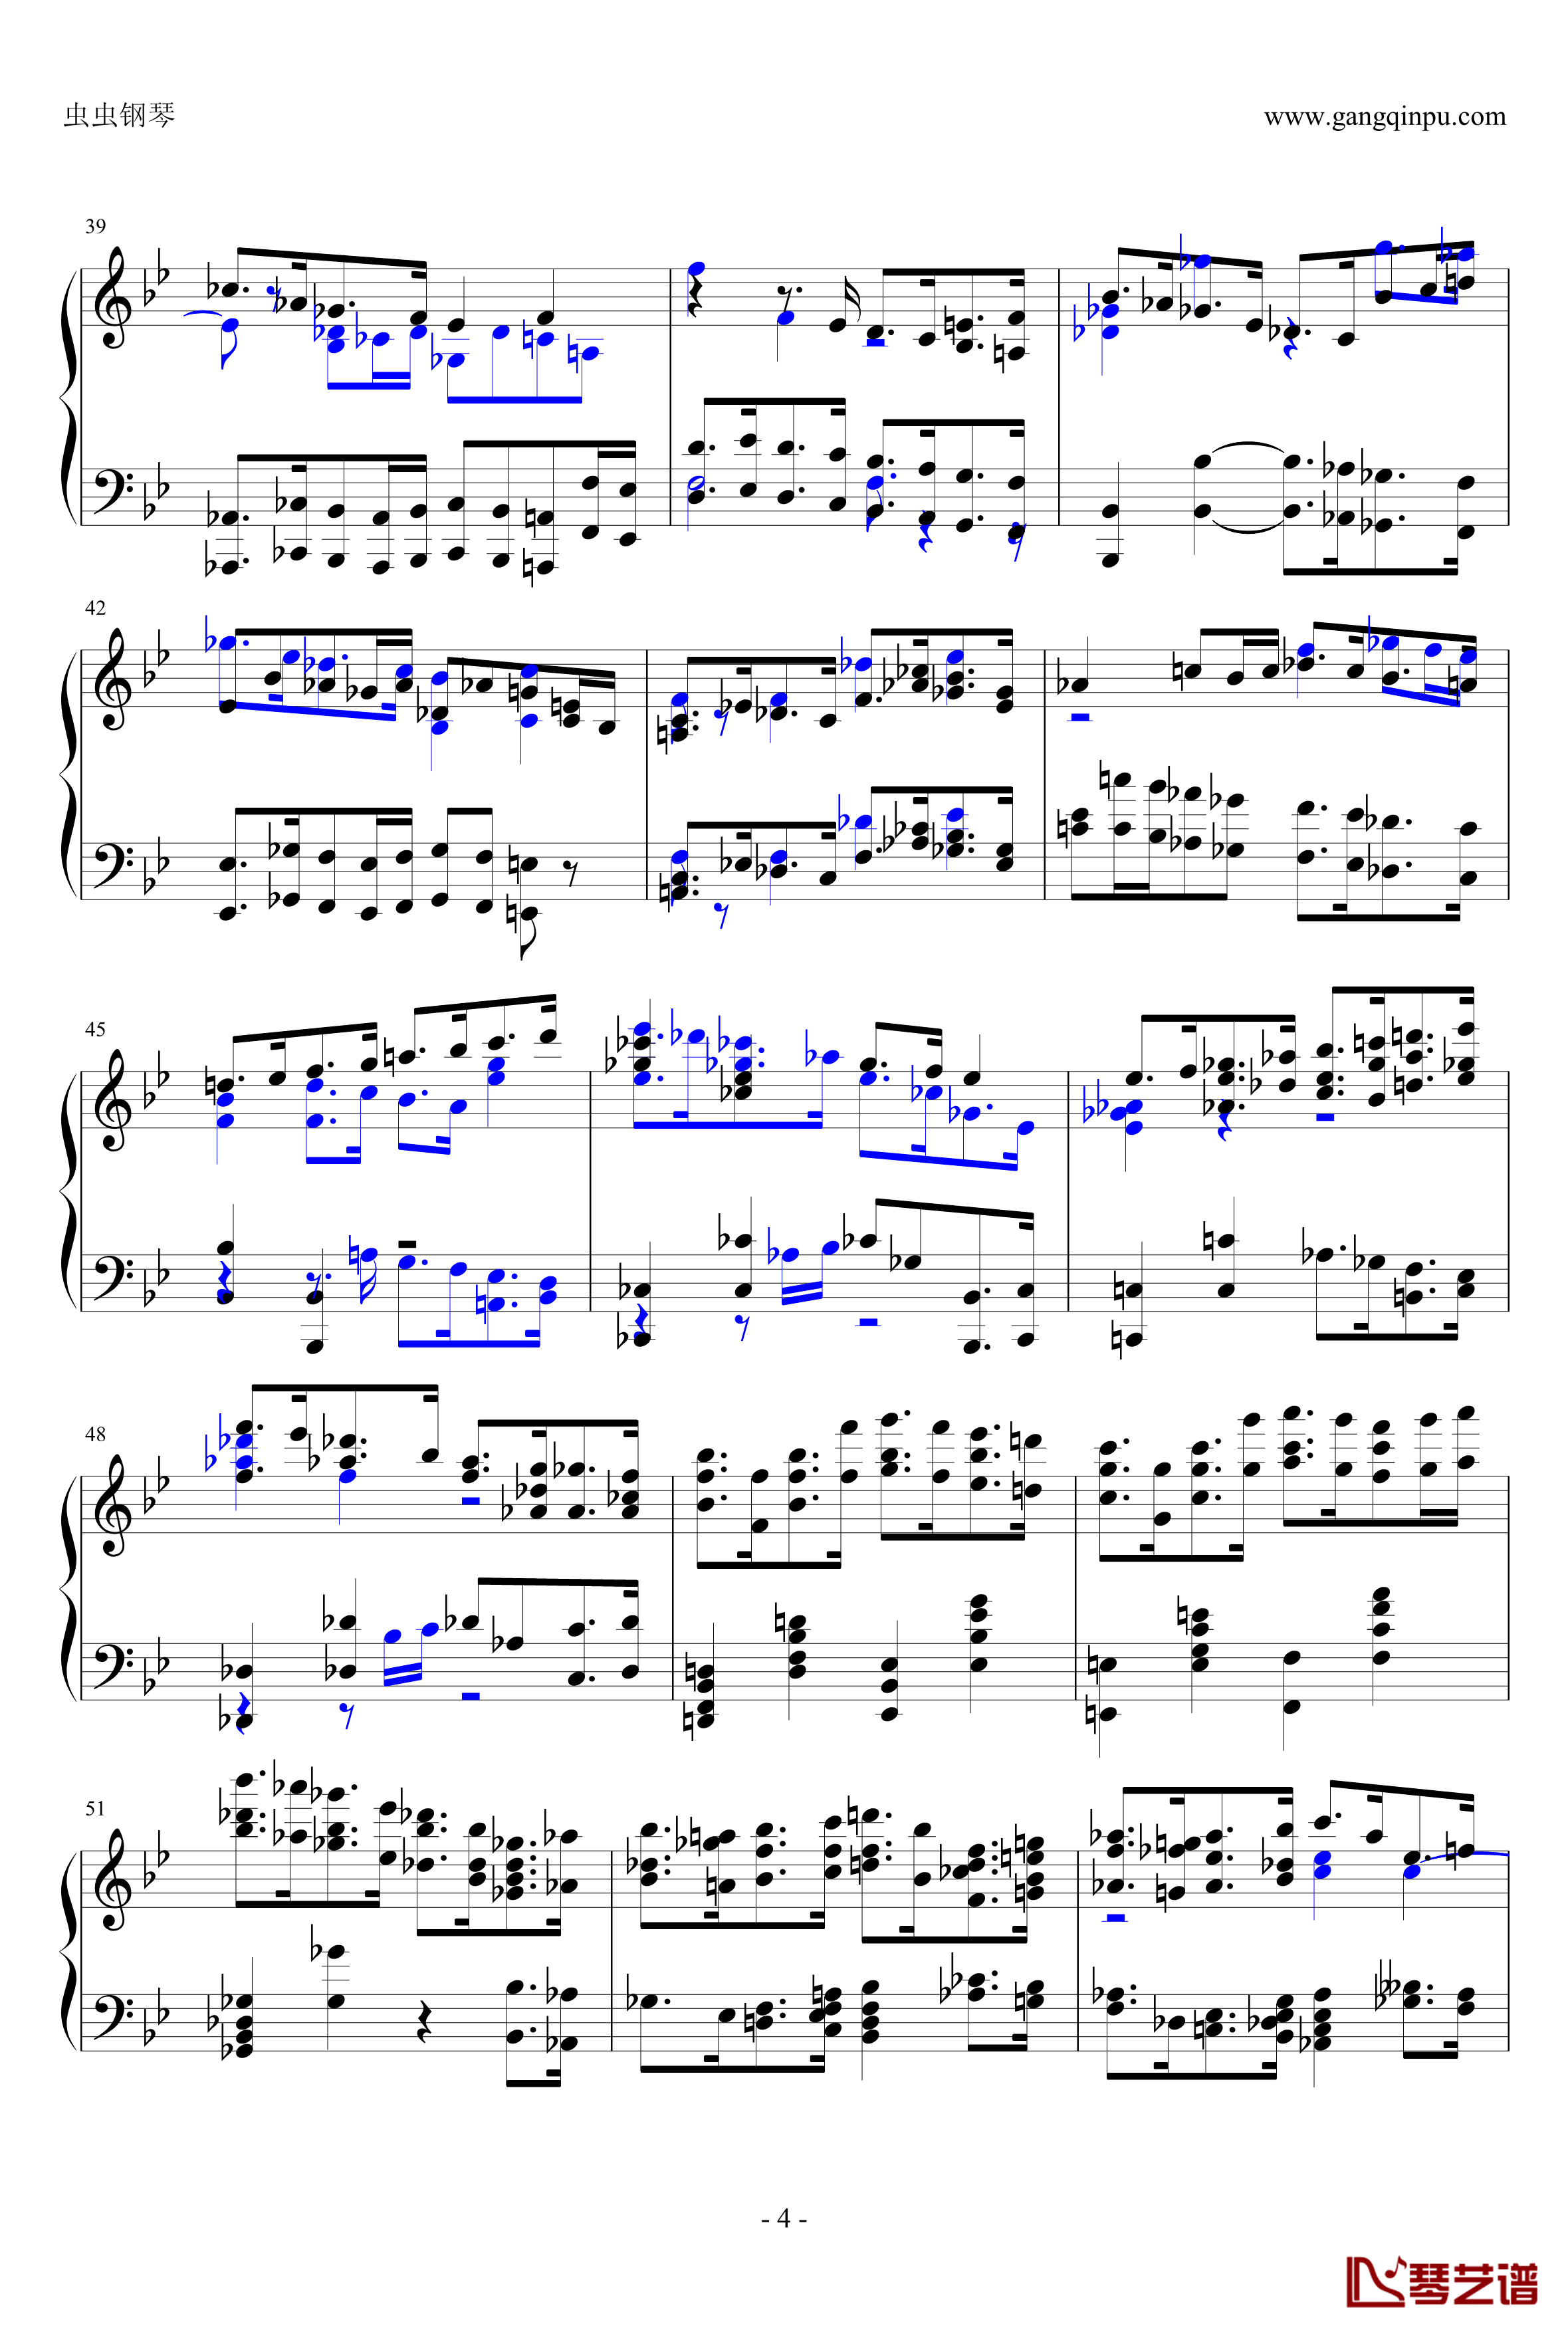 布鲁克纳第五交响曲第四乐章钢琴谱-钢琴独奏版4